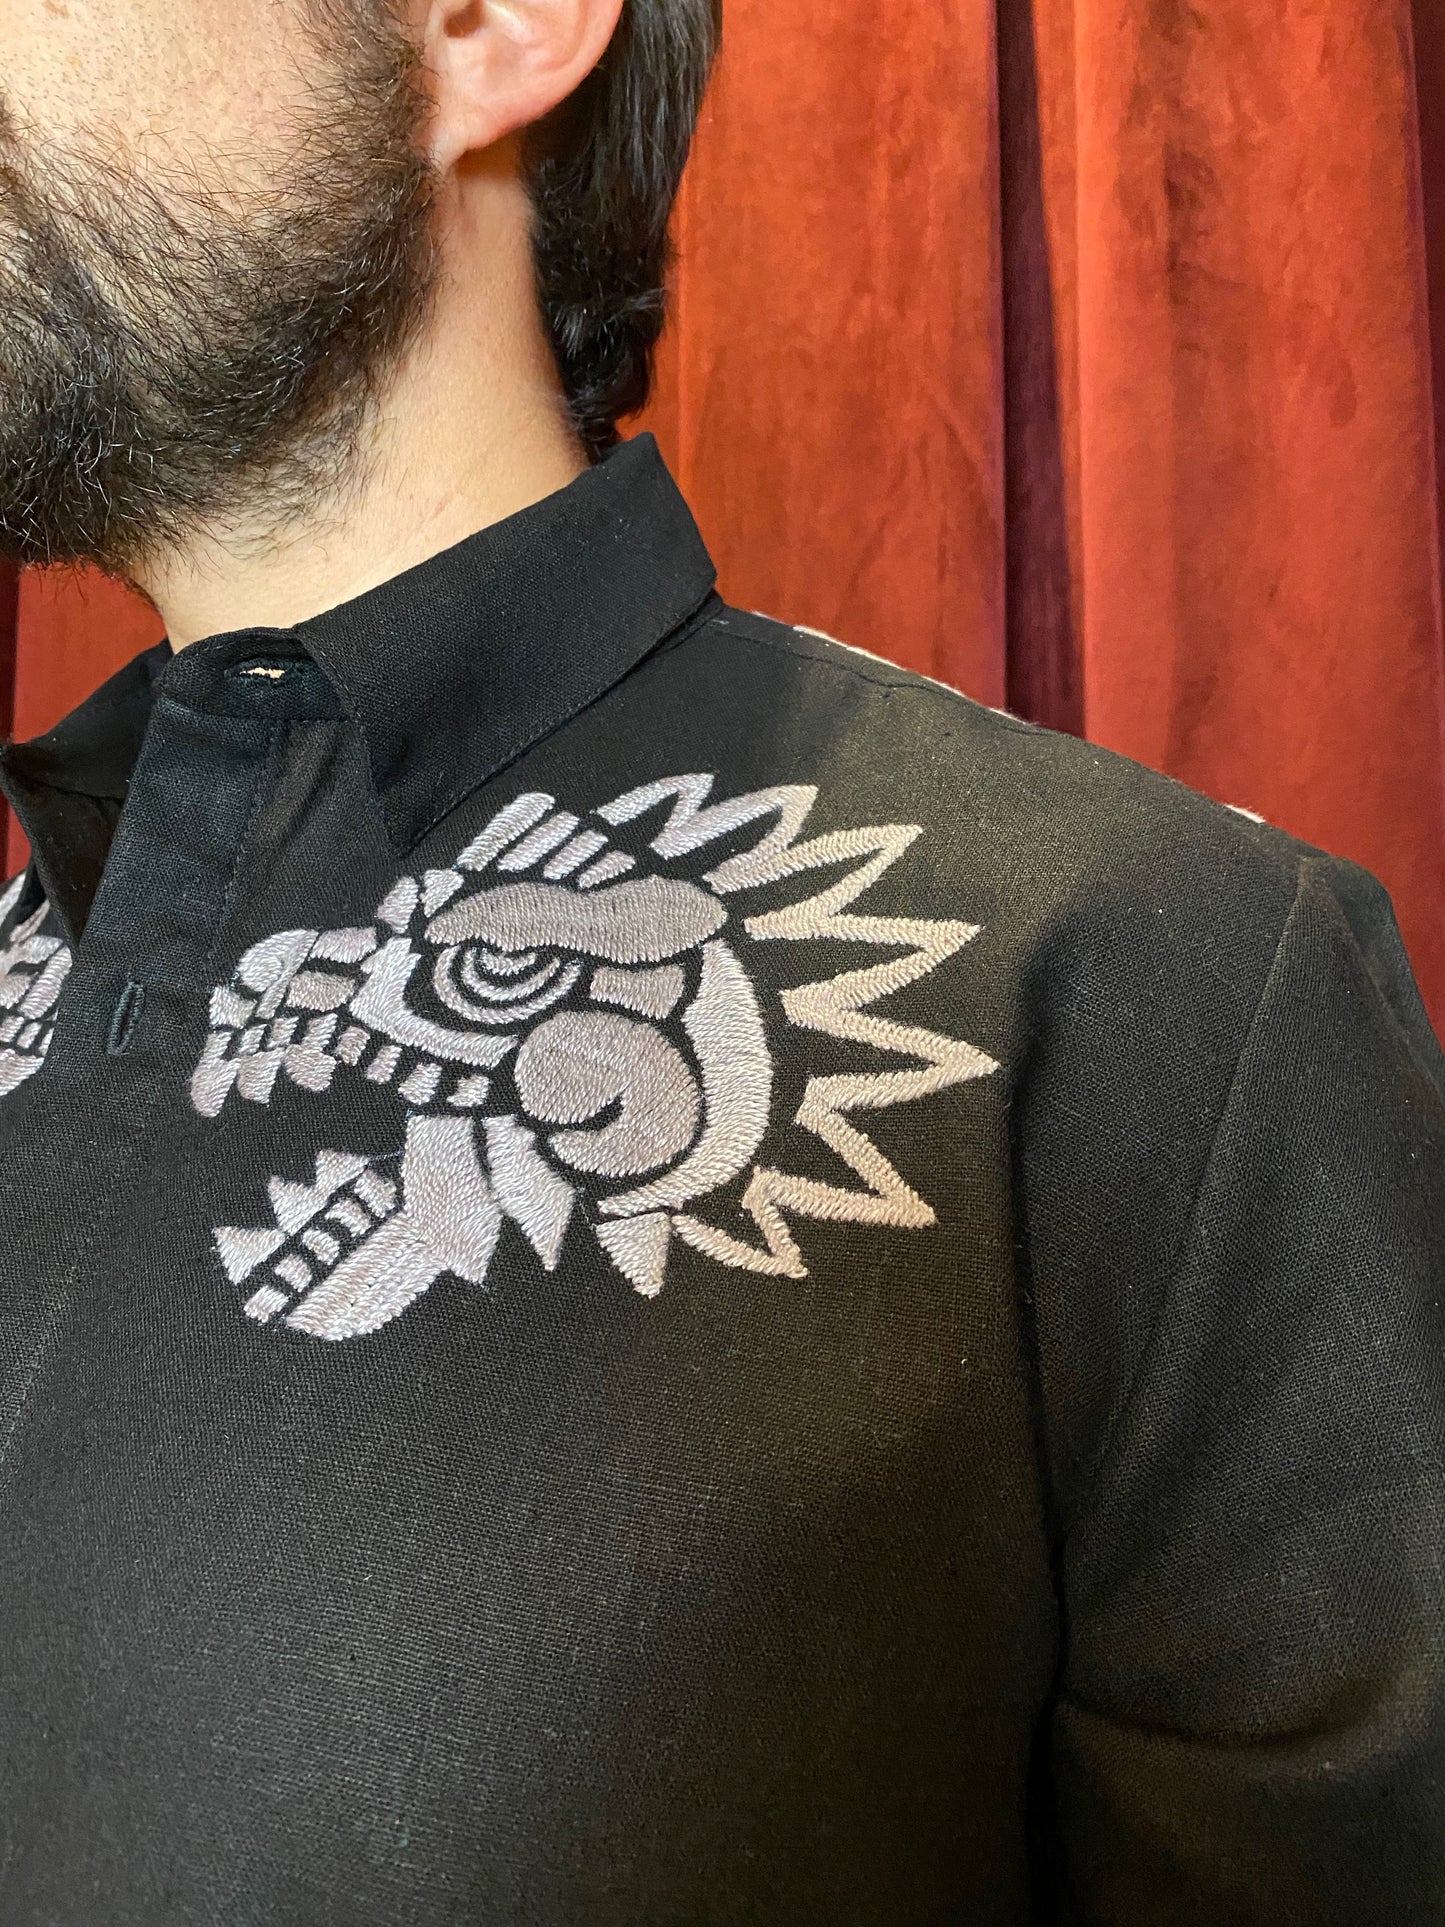 Camisa Quetzalcoatl